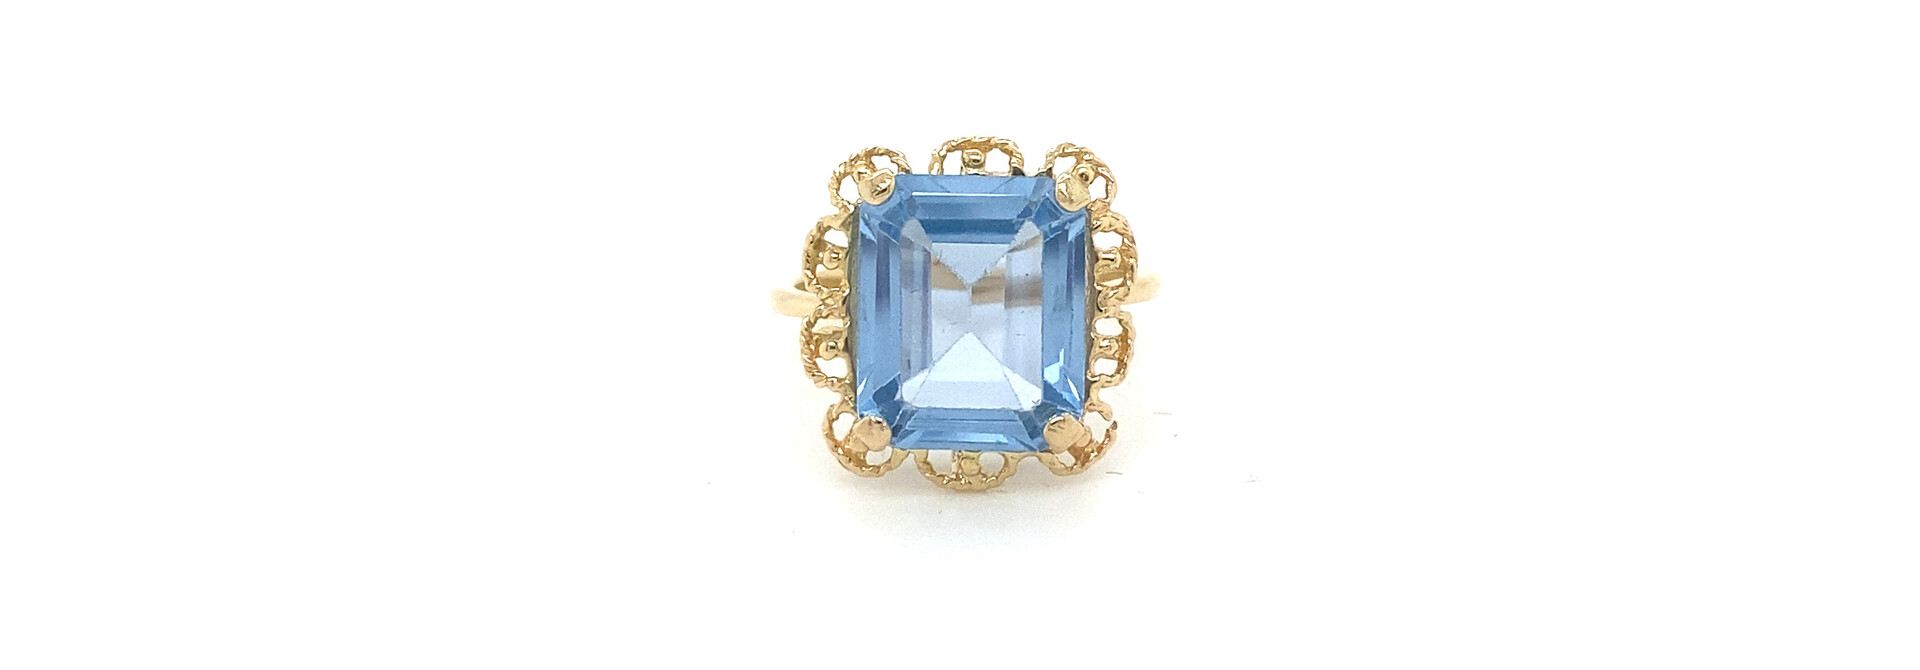 Ring lichtblauwe baguette steen met sierlijke omlijning vintage stijl